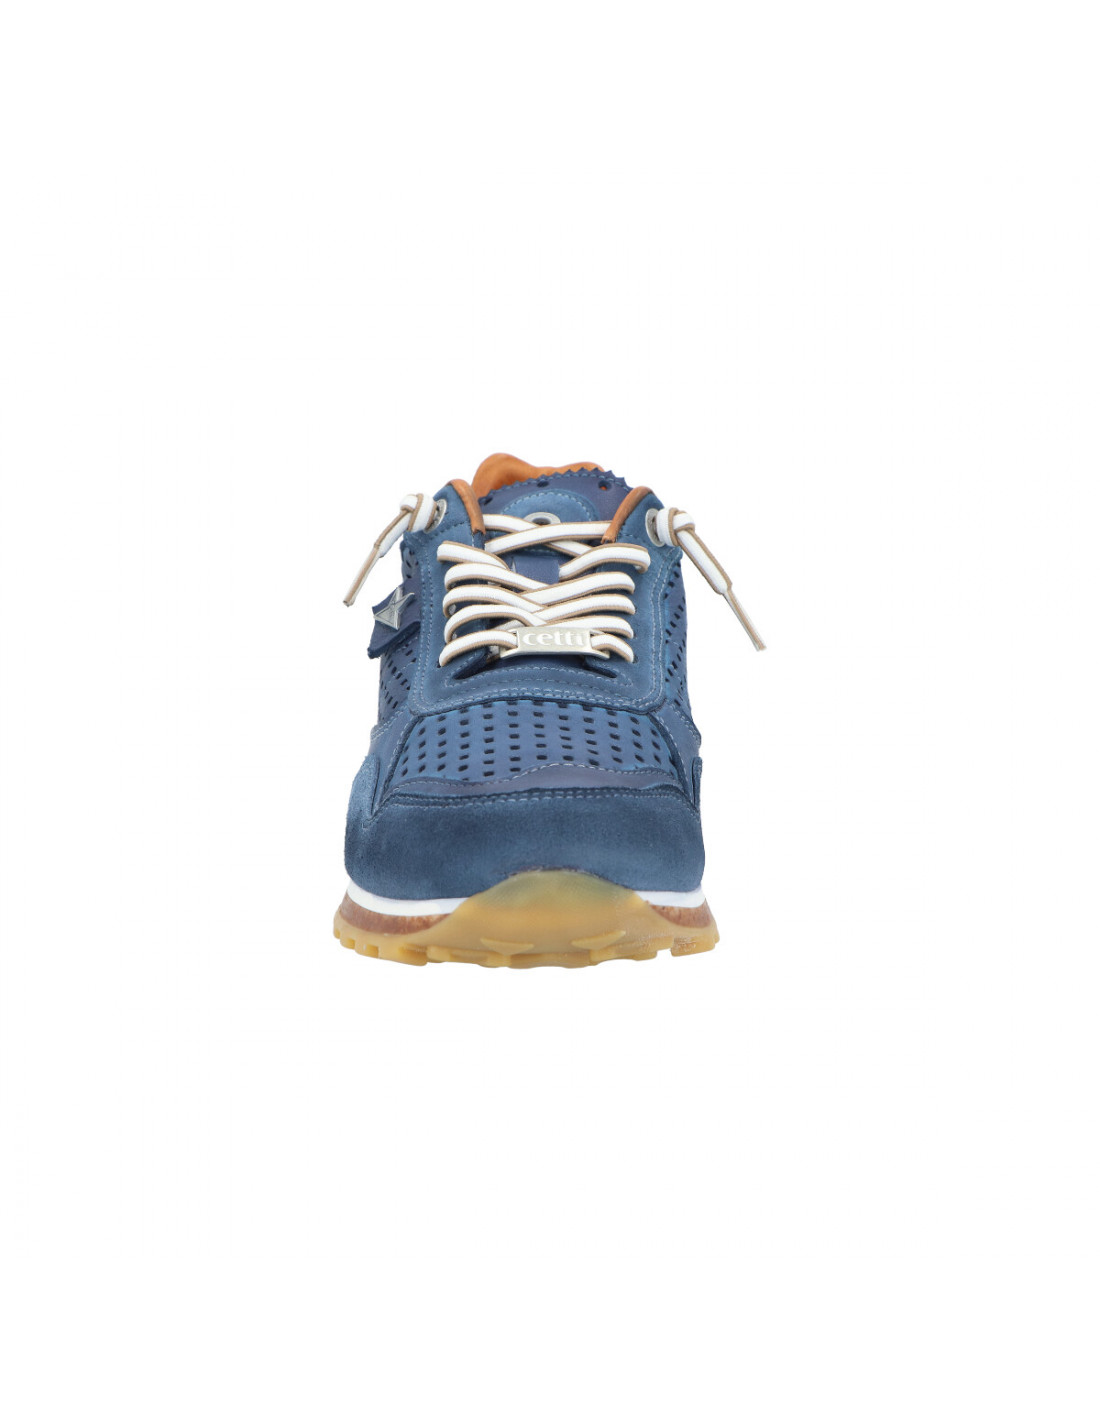 Cetti :: Lux · Sportive · Shoes. Calzado exclusivo para gente exclusiva